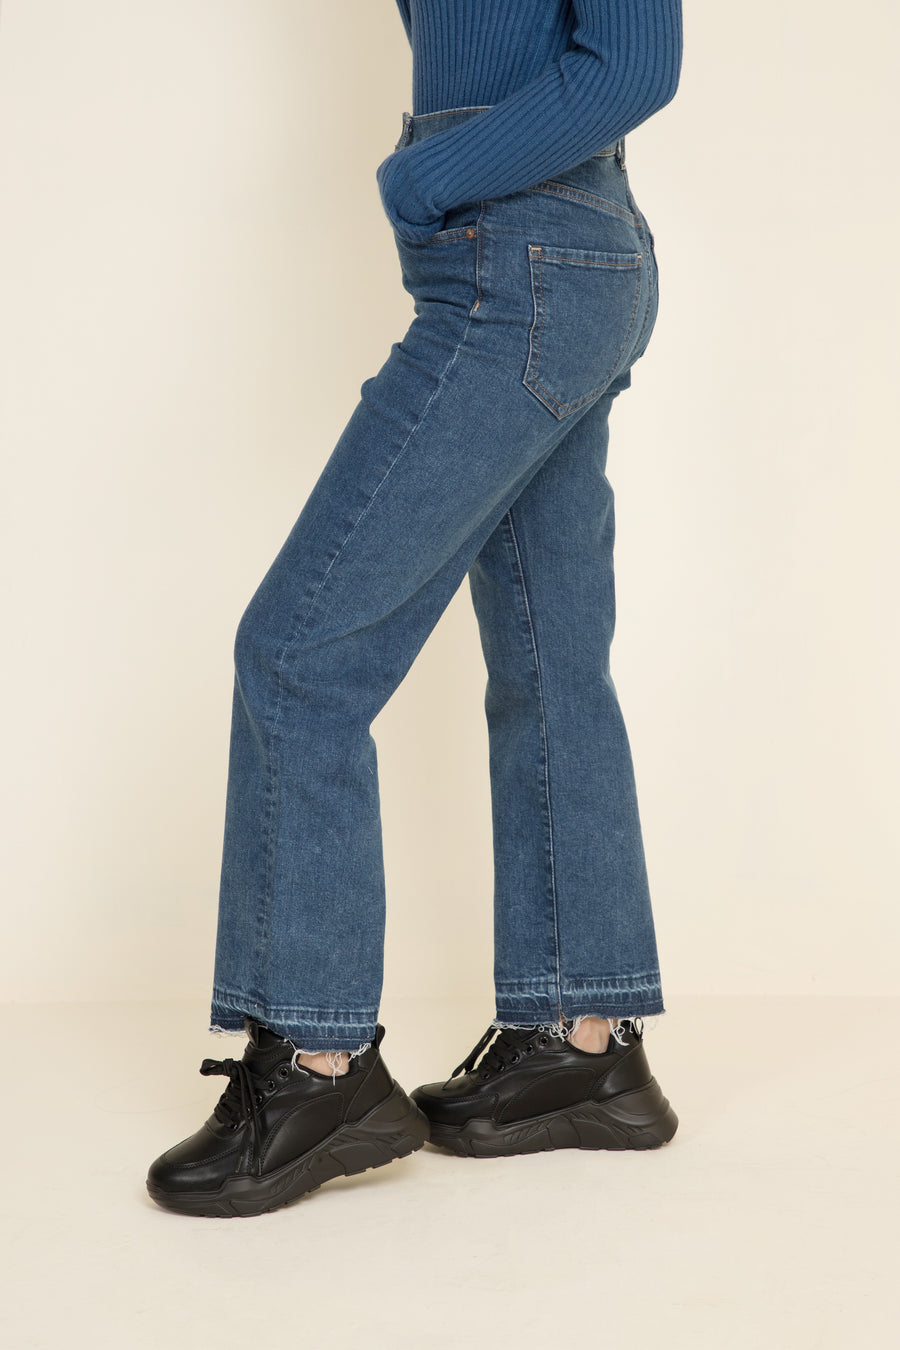 Whose it- boyfriend jeans